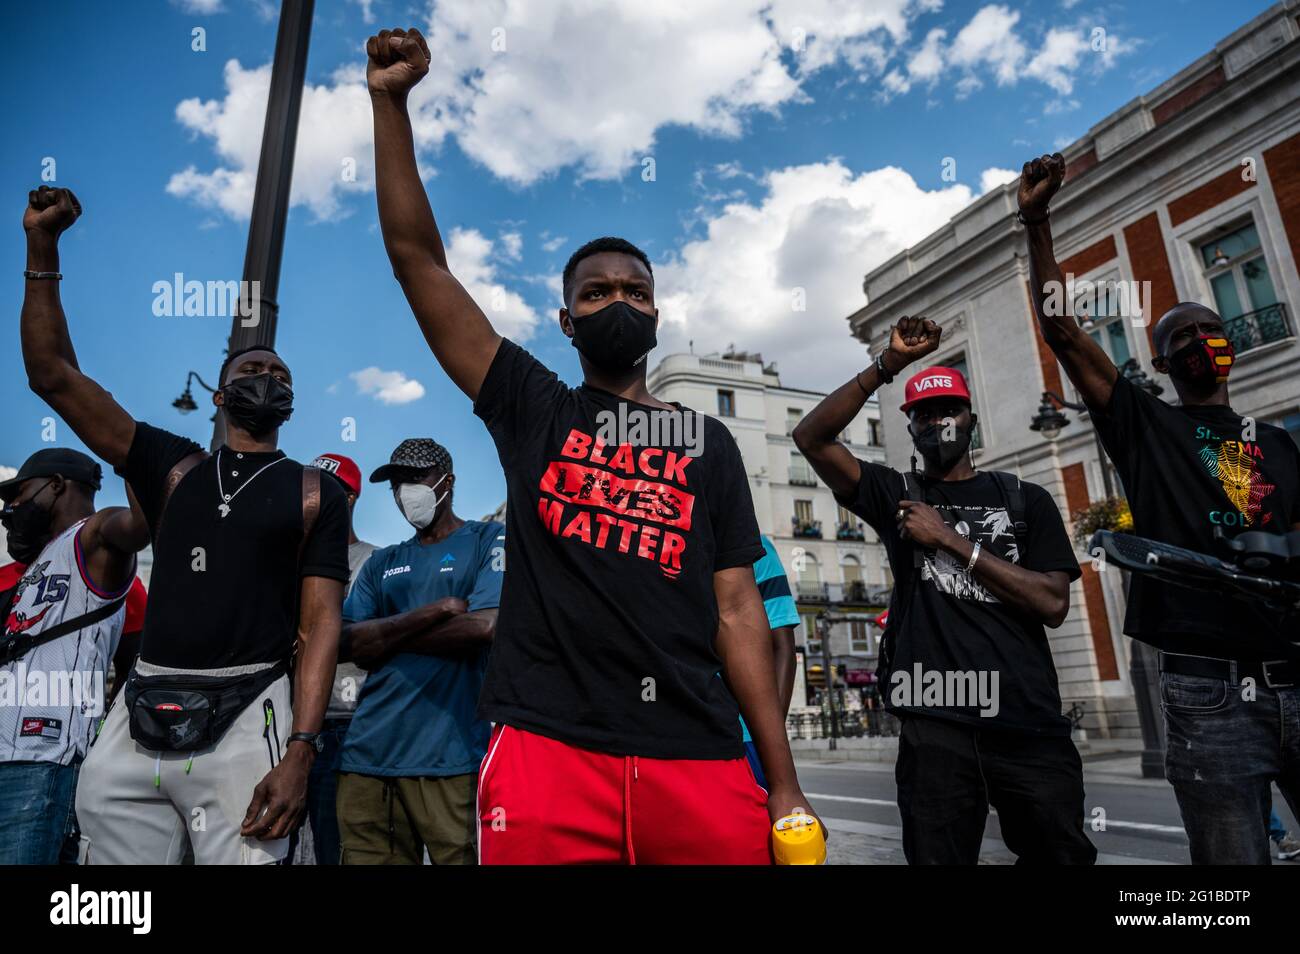 Madrid, Spanien. Juni 2021. Menschen erheben ihre Fäuste während eines Protestes gegen Rassismus als Teil der sozialen Bewegung Black Lives Matter im Zusammenhang mit dem Tod des afroamerikanischen Bürgers George Floyd in den Vereinigten Staaten. Quelle: Marcos del Mazo/Alamy Live News Stockfoto